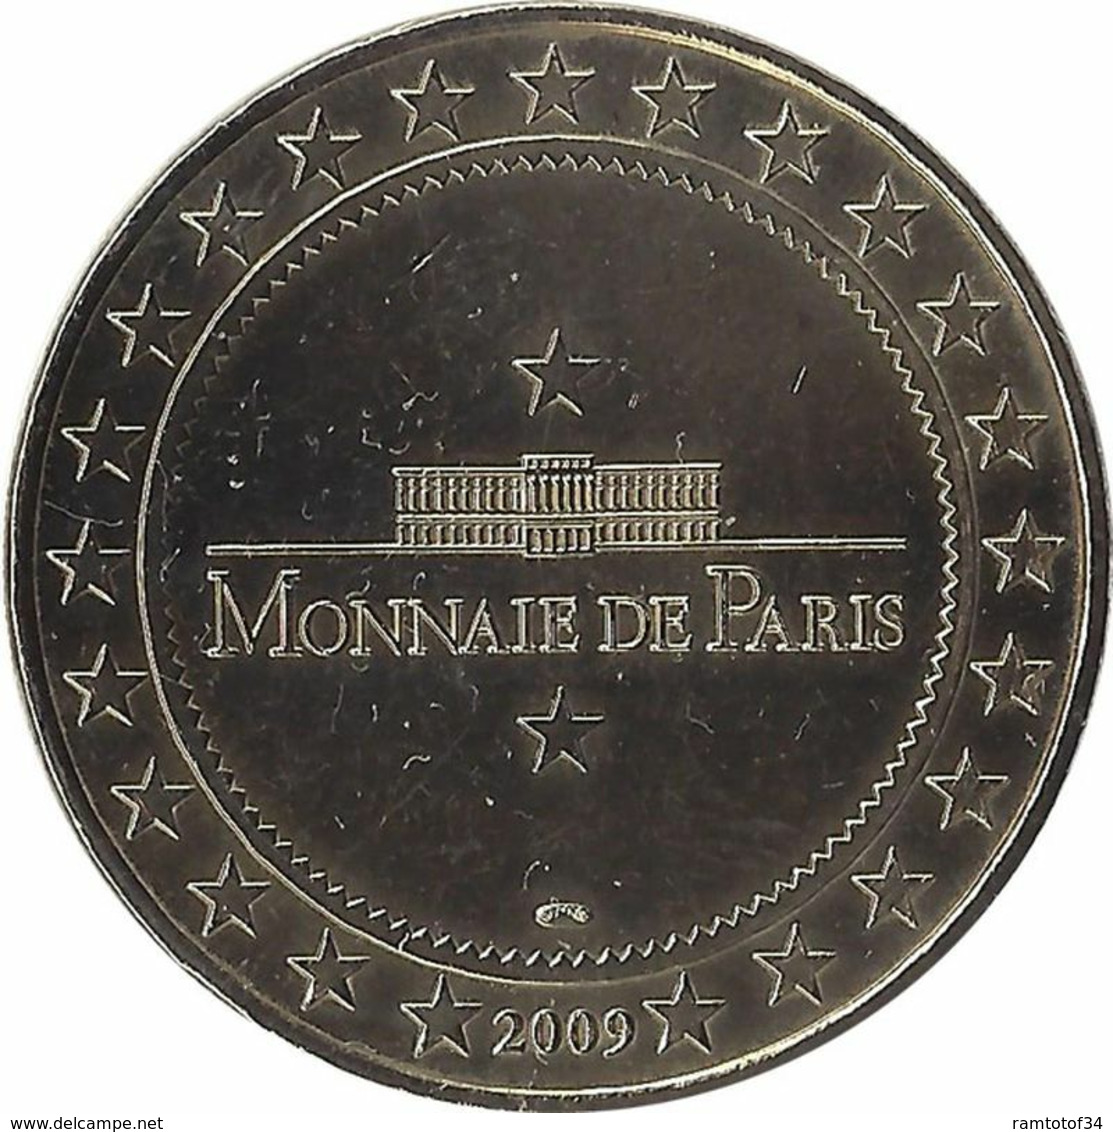 2009 MDP208 - BETHUNE 2 - Les Charitables / MONNAIE DE PARIS - 2009